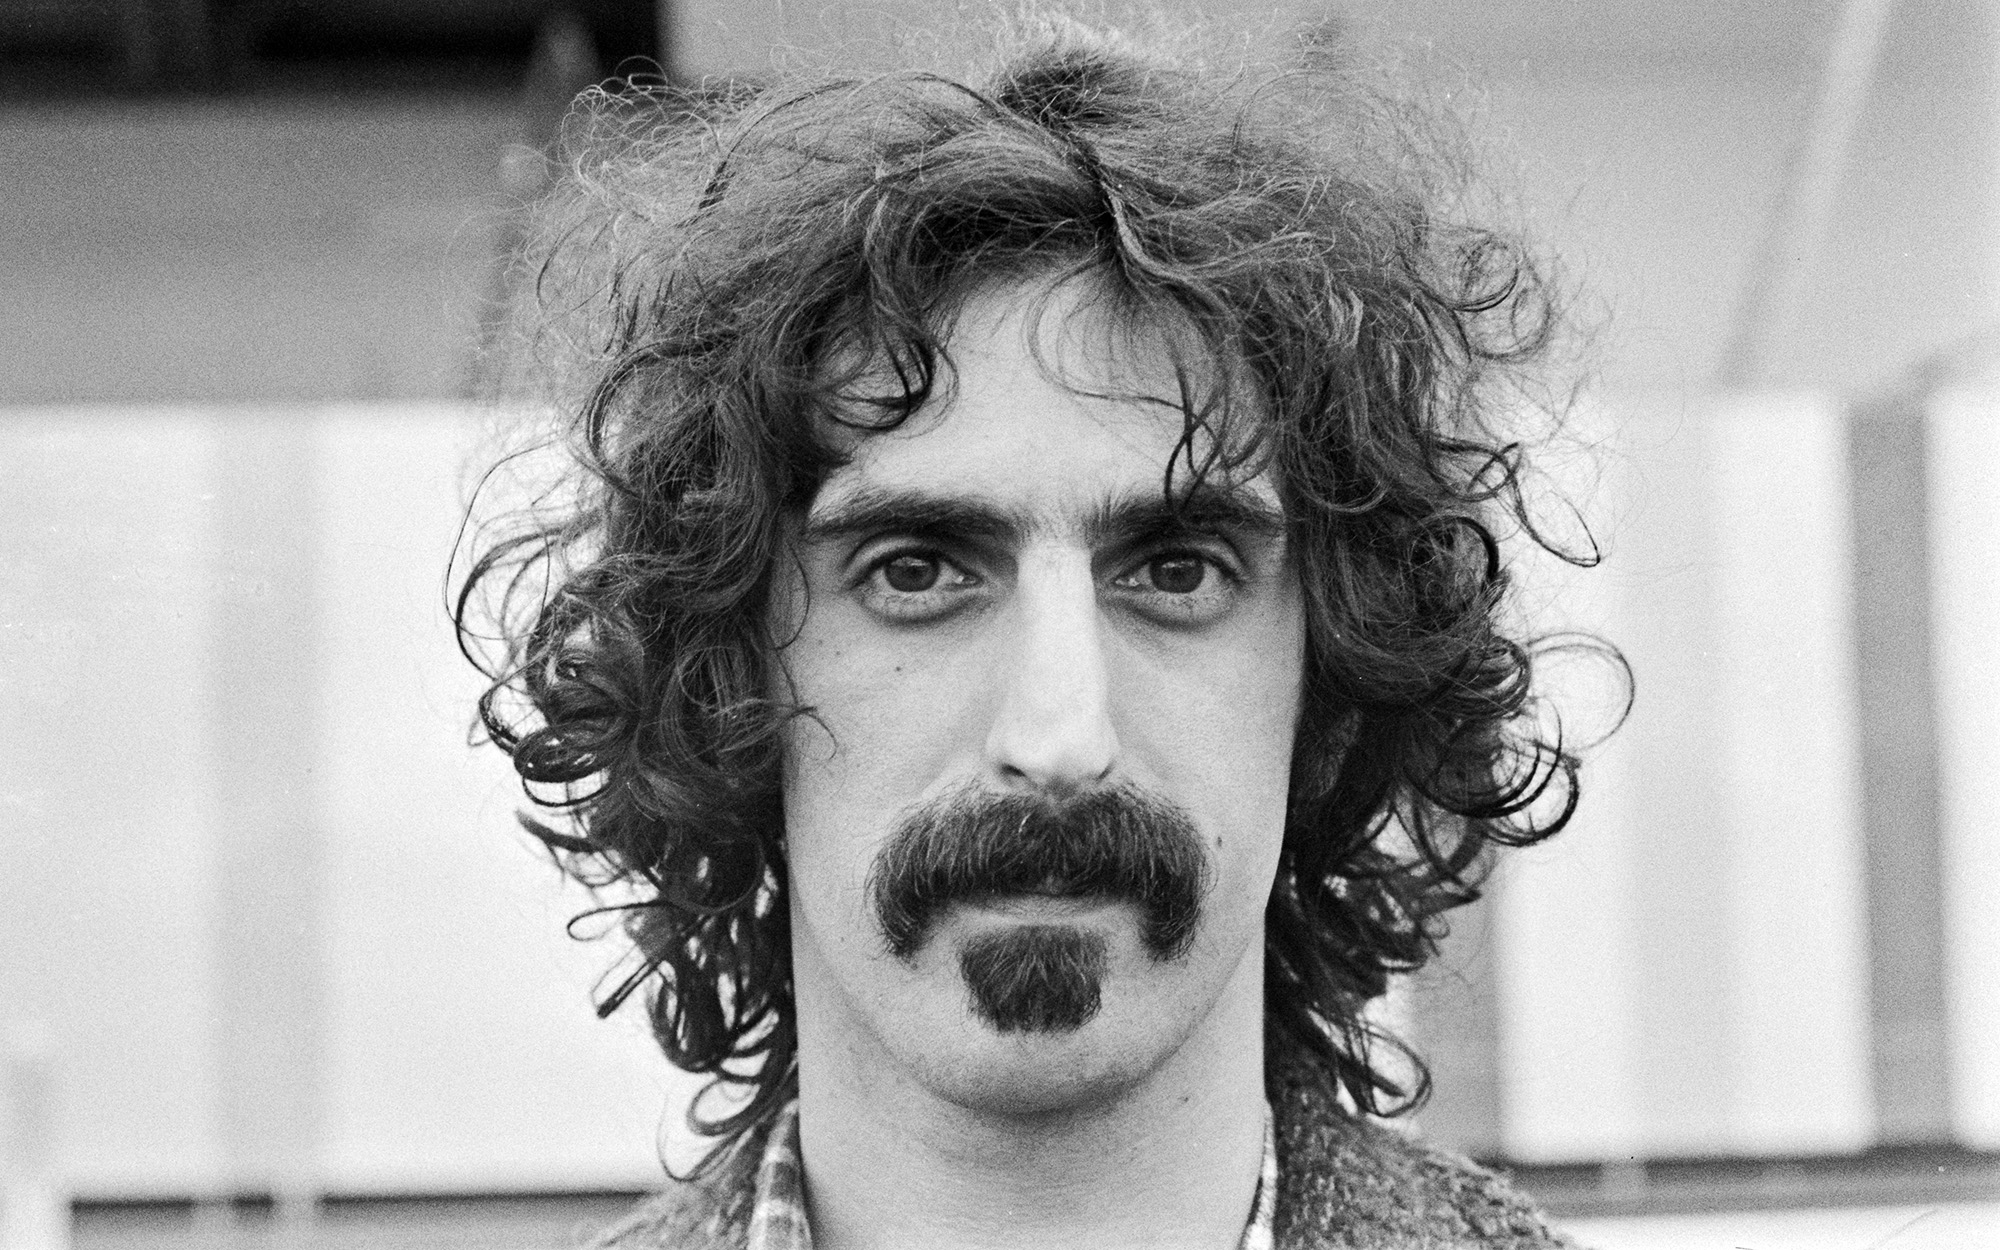 Frank Zappa in London in 1972.